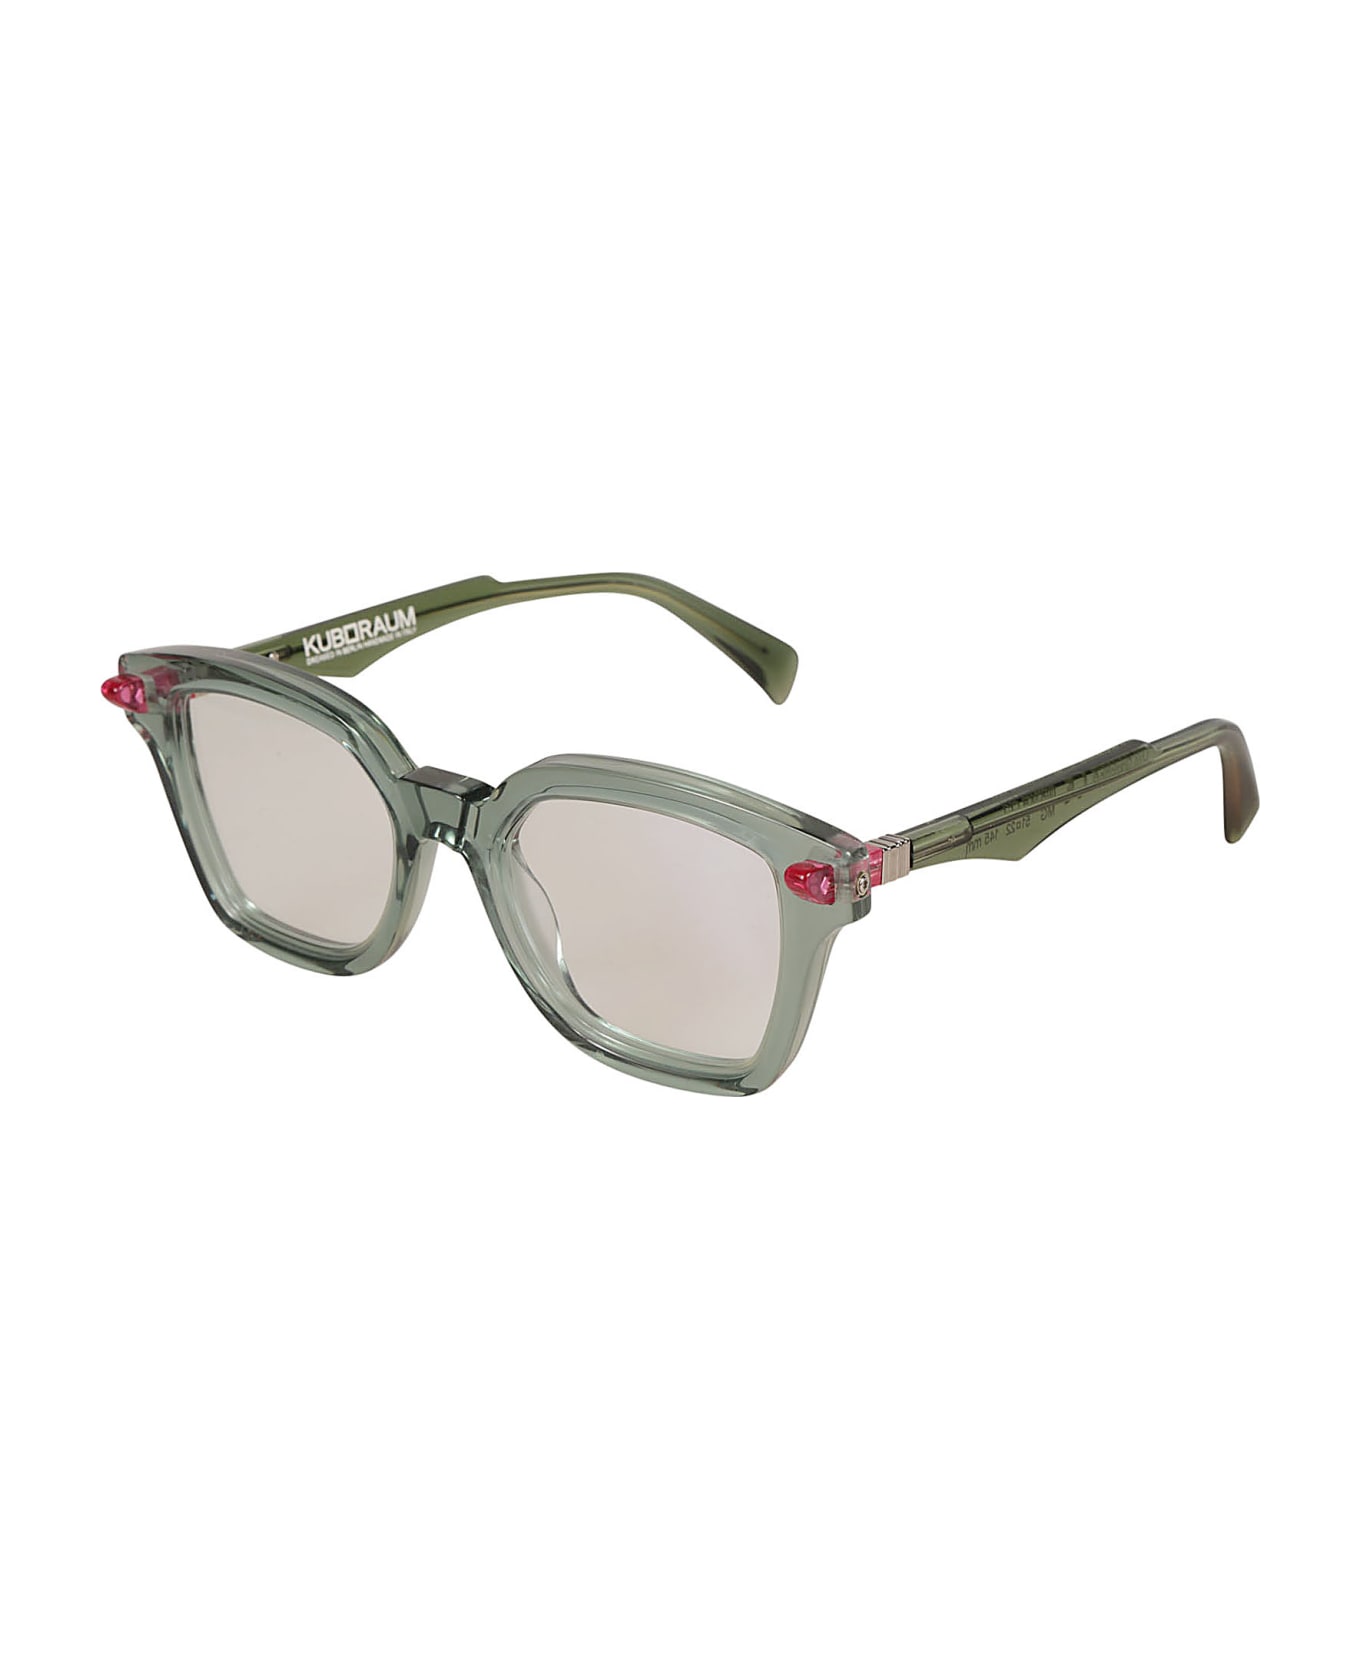 Kuboraum Q3 Sunglasses Sunglasses - crystal